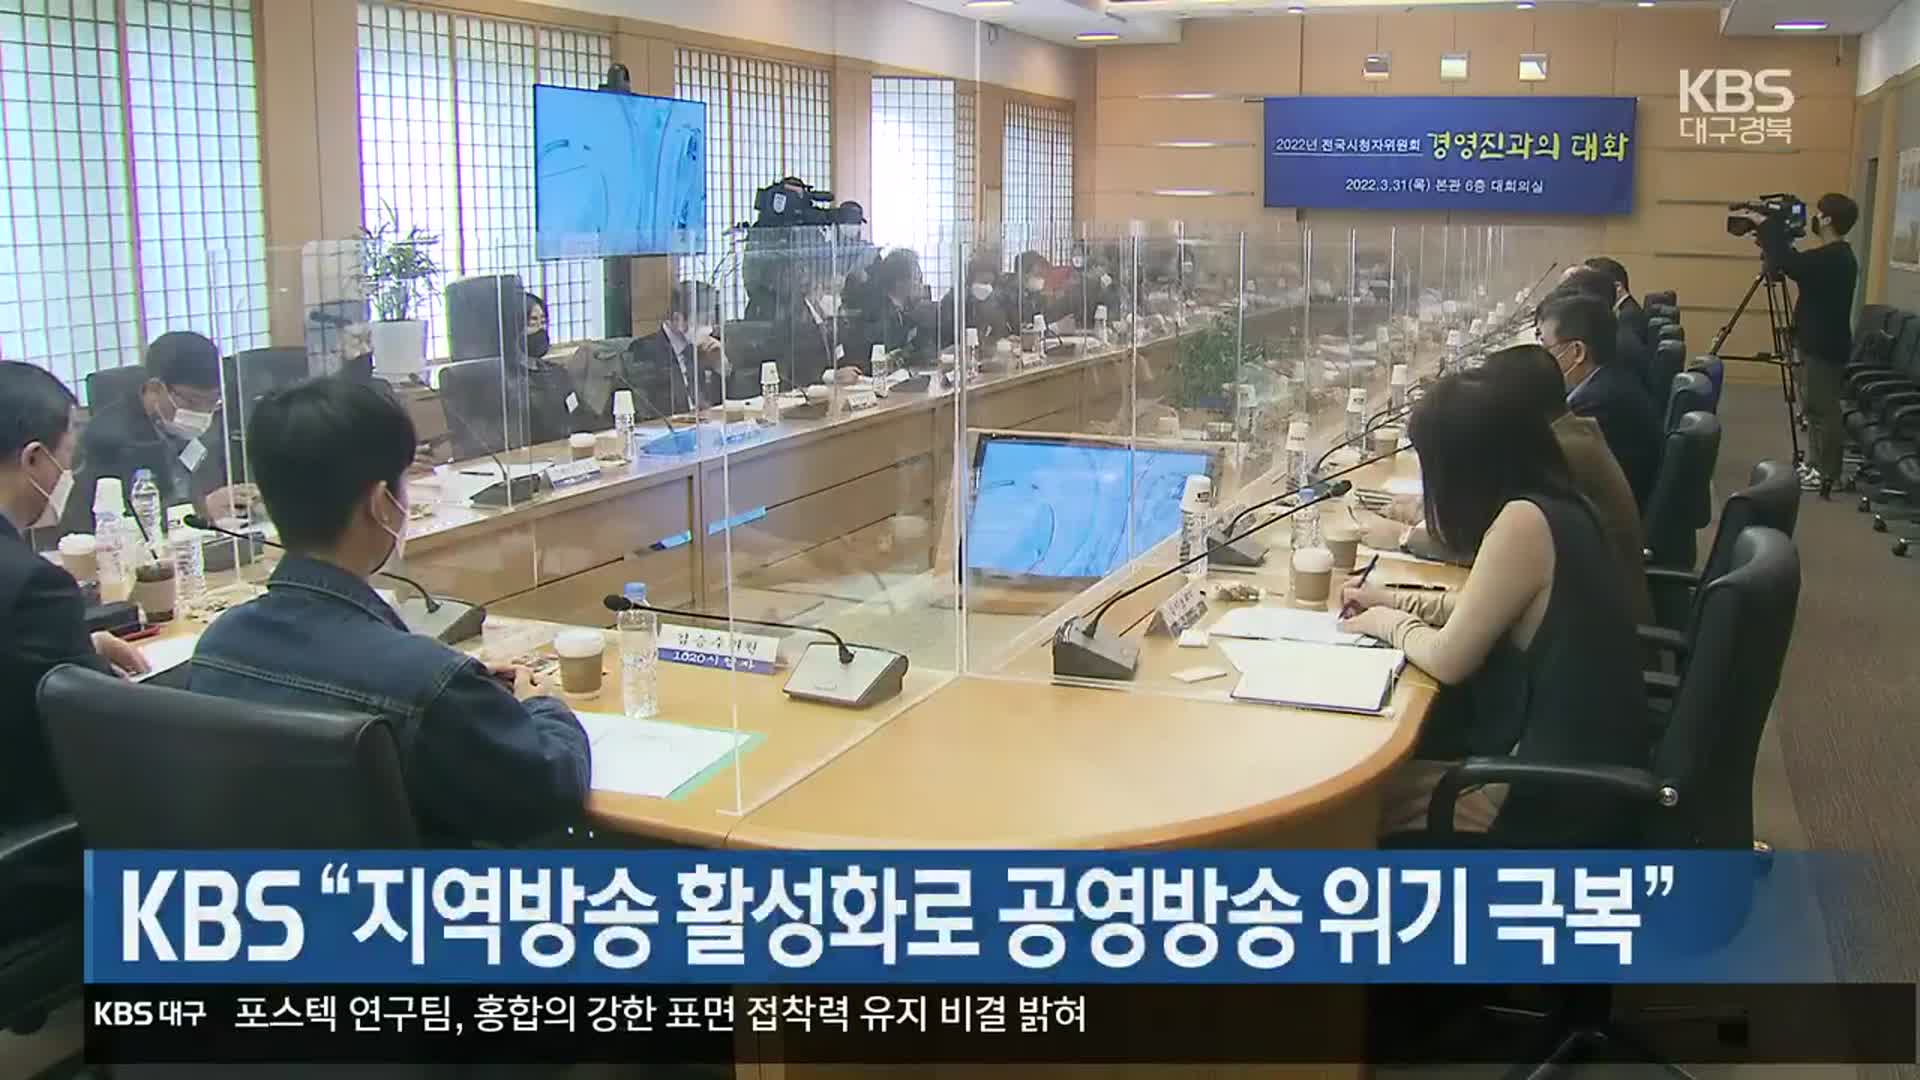 KBS “지역방송 활성화로 공영방송 위기 극복”